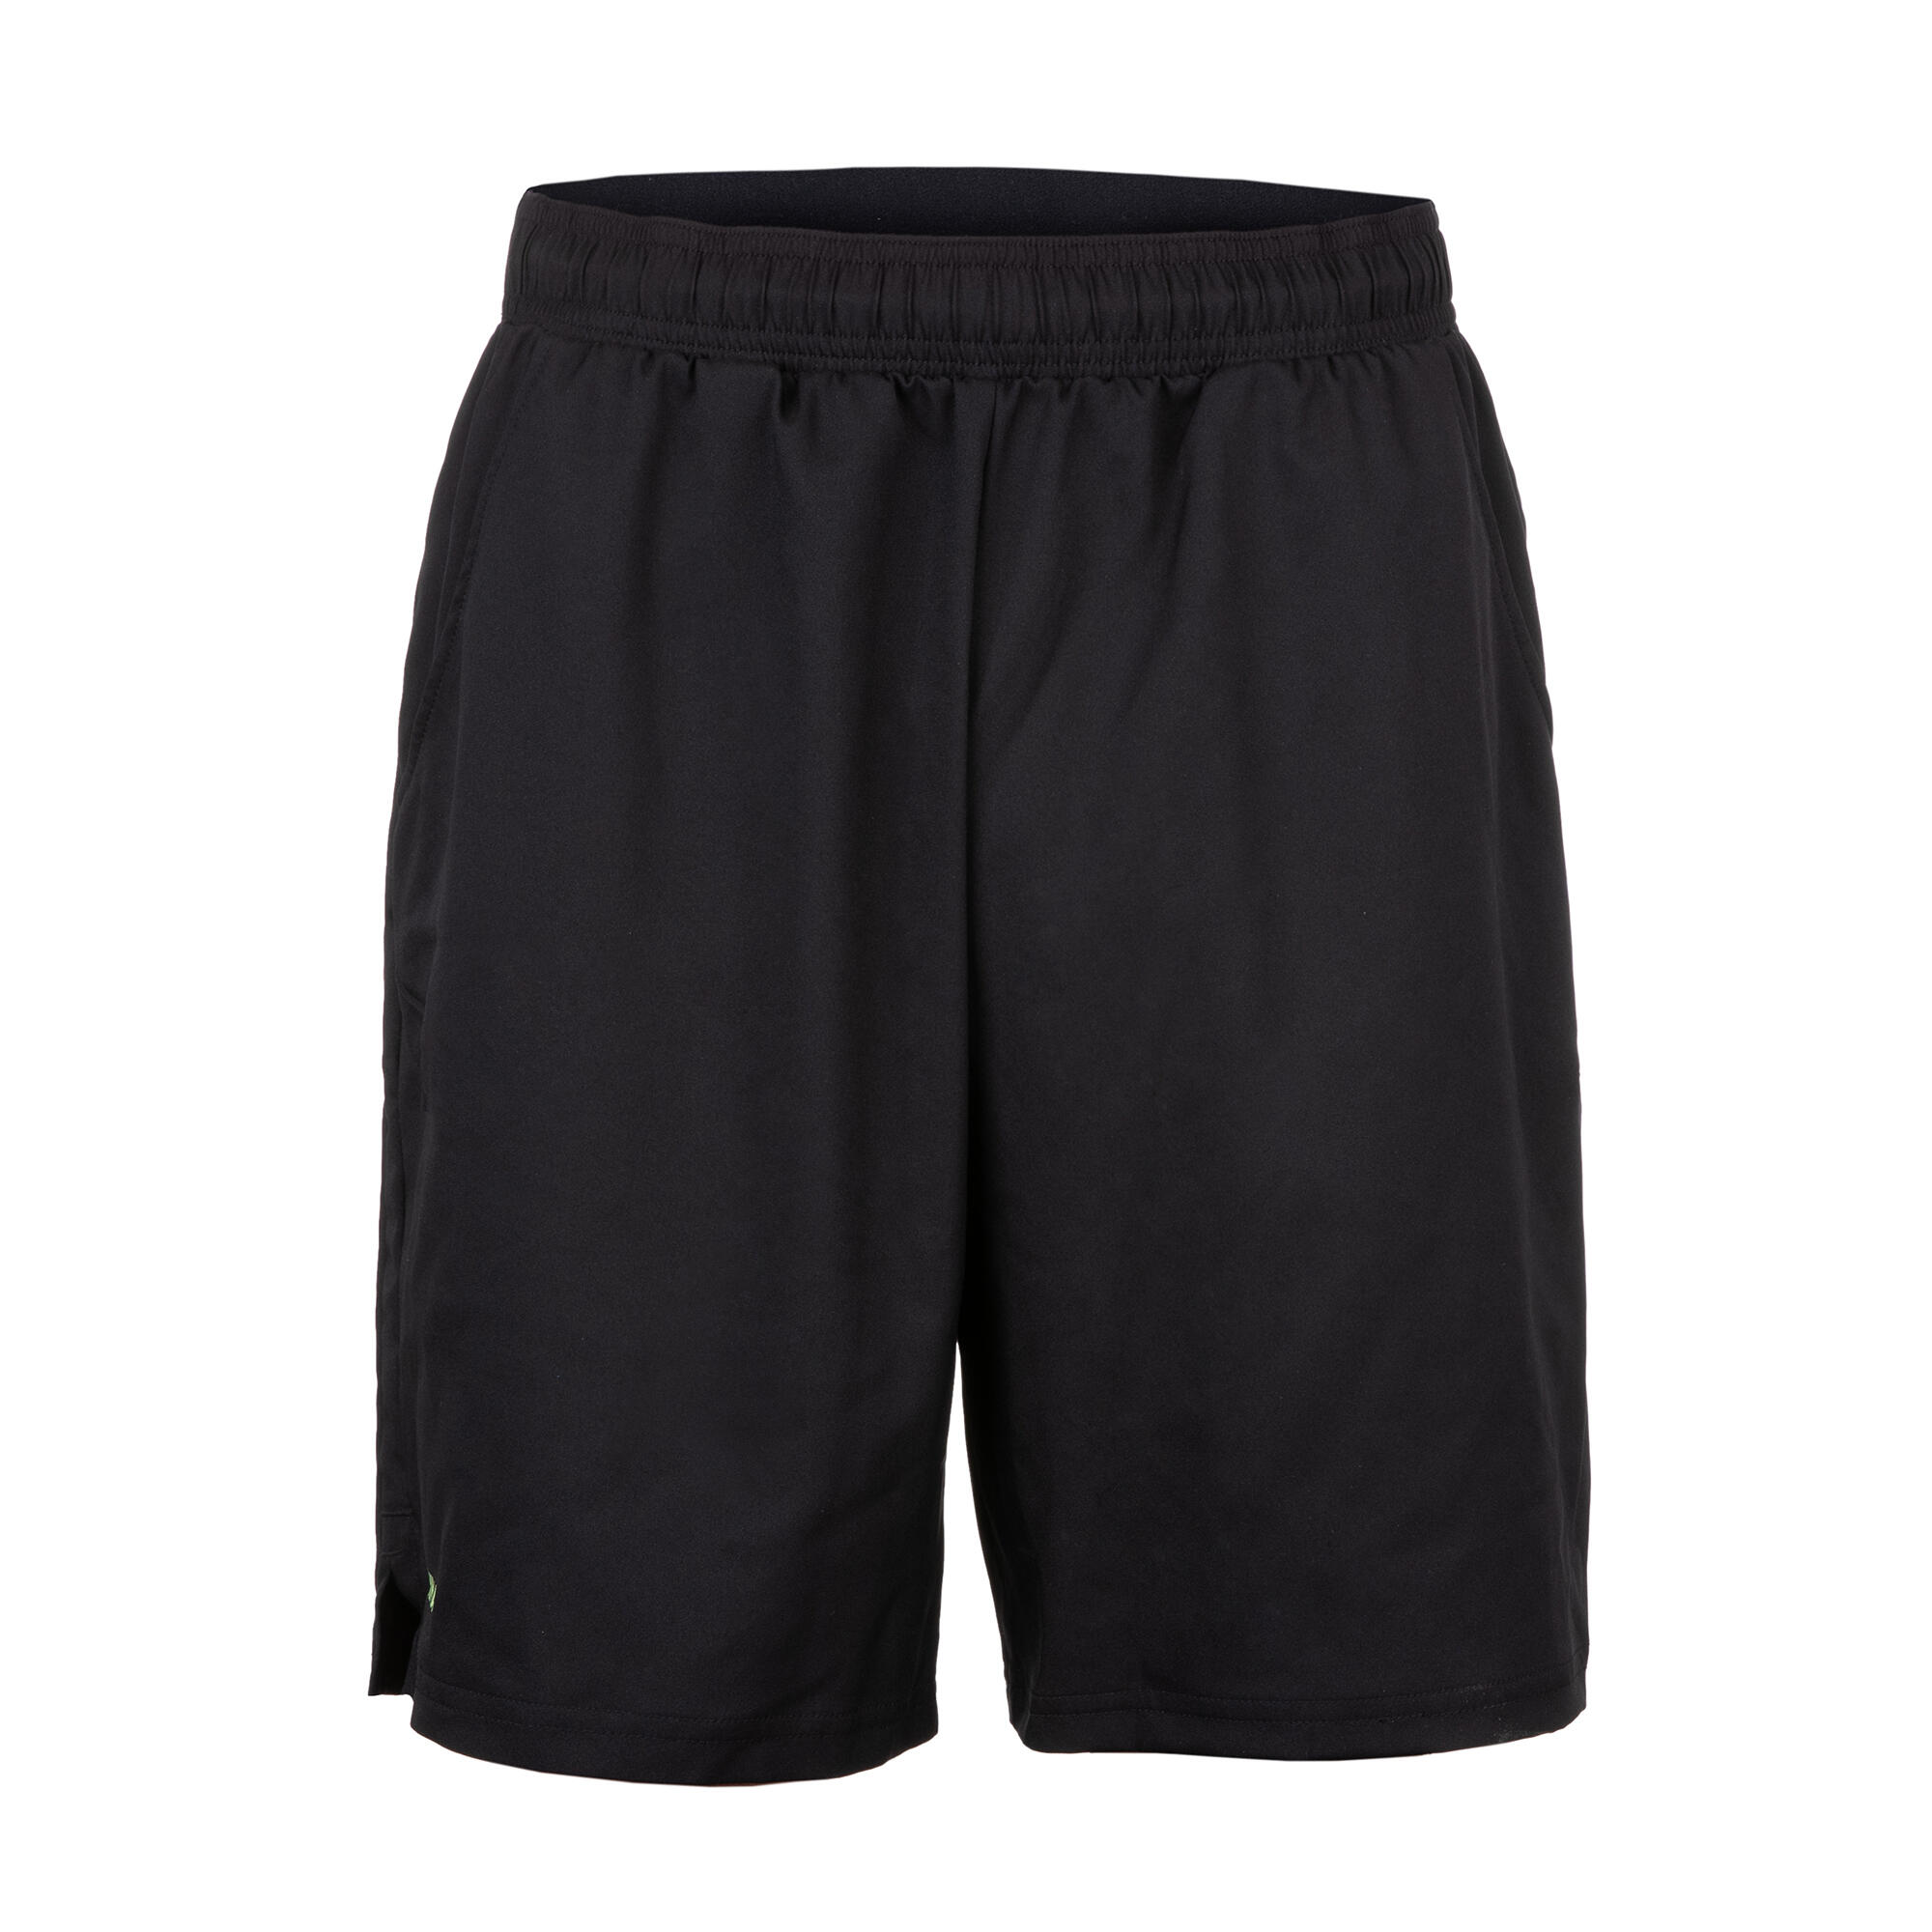 Men's Padel Shorts Psh 500 - Black